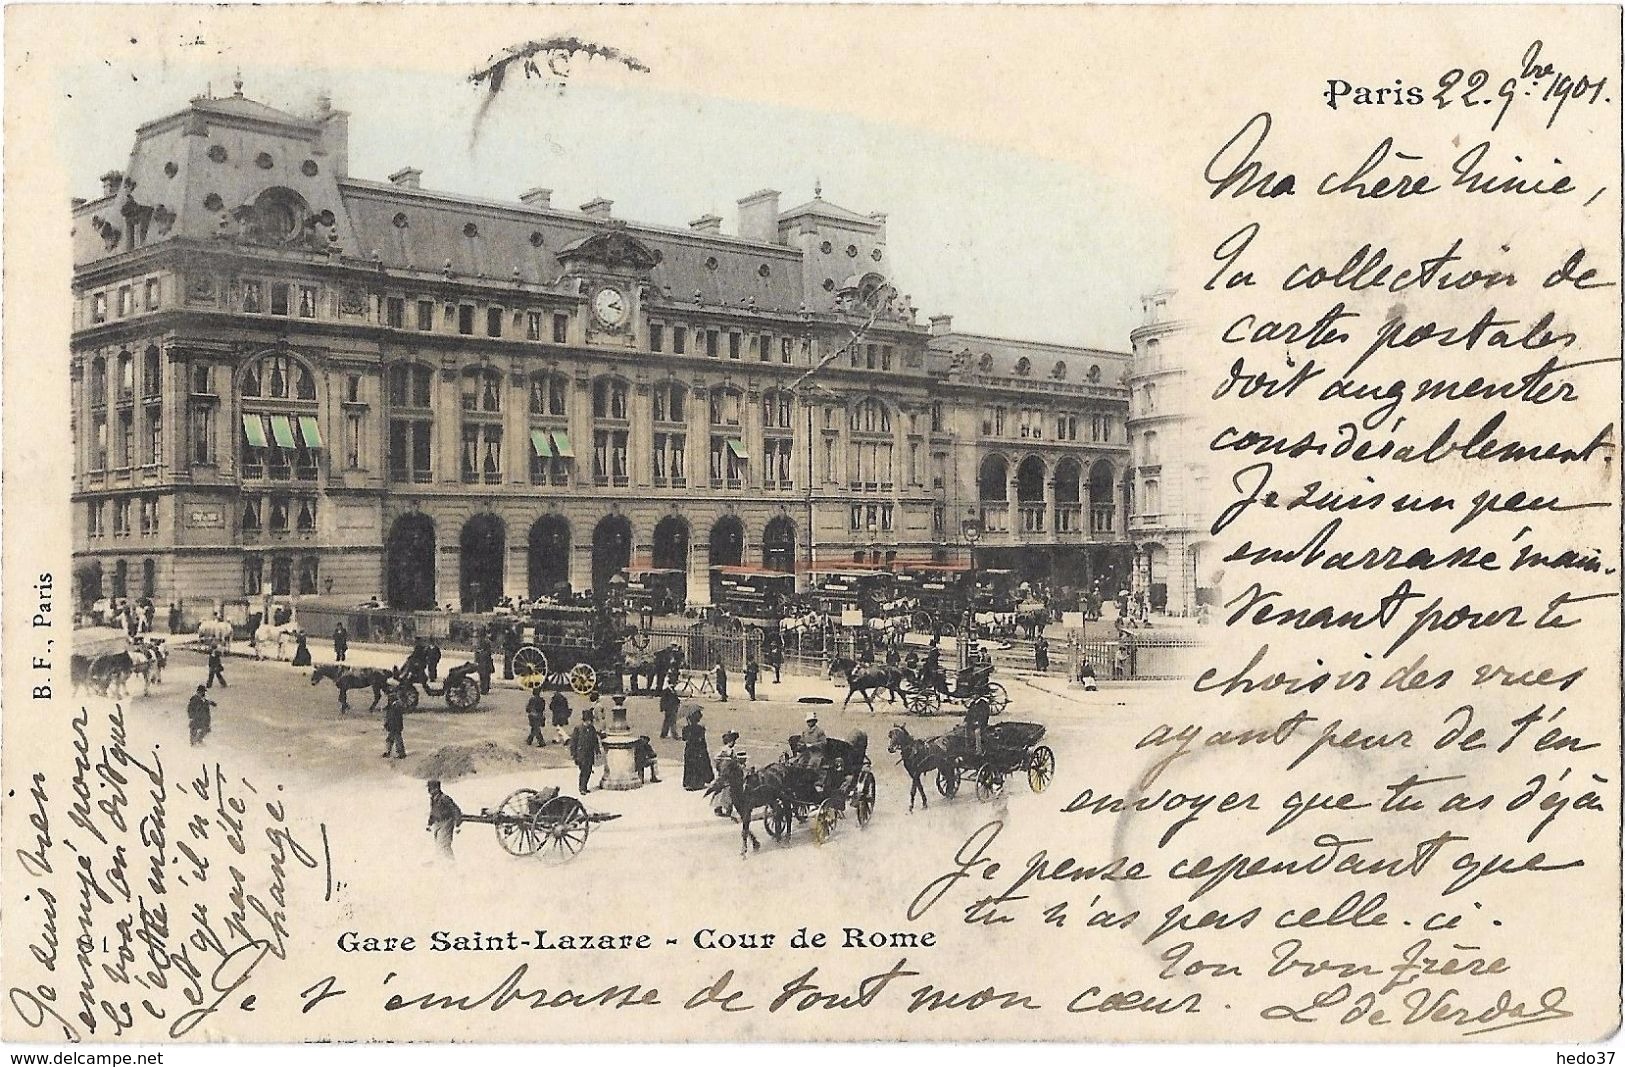 Paris - Gare Saint-Lazare - Cour de Rome